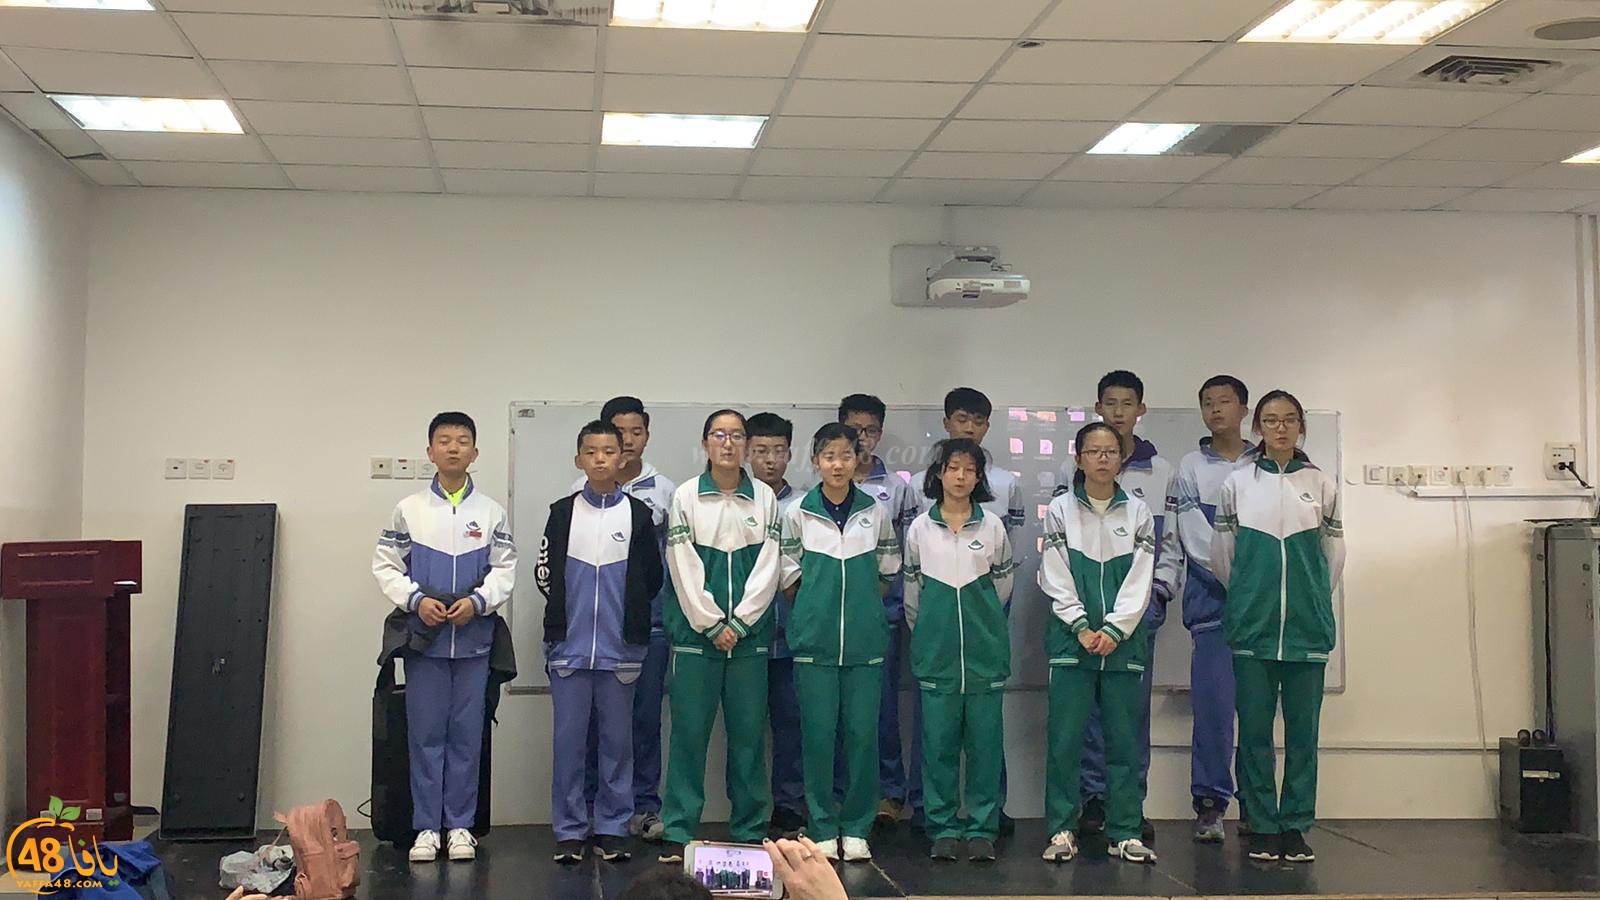 تبادل ثقافي مميز يجمع طلاب اجيال الثانوية وبعثة من طلاب الصين